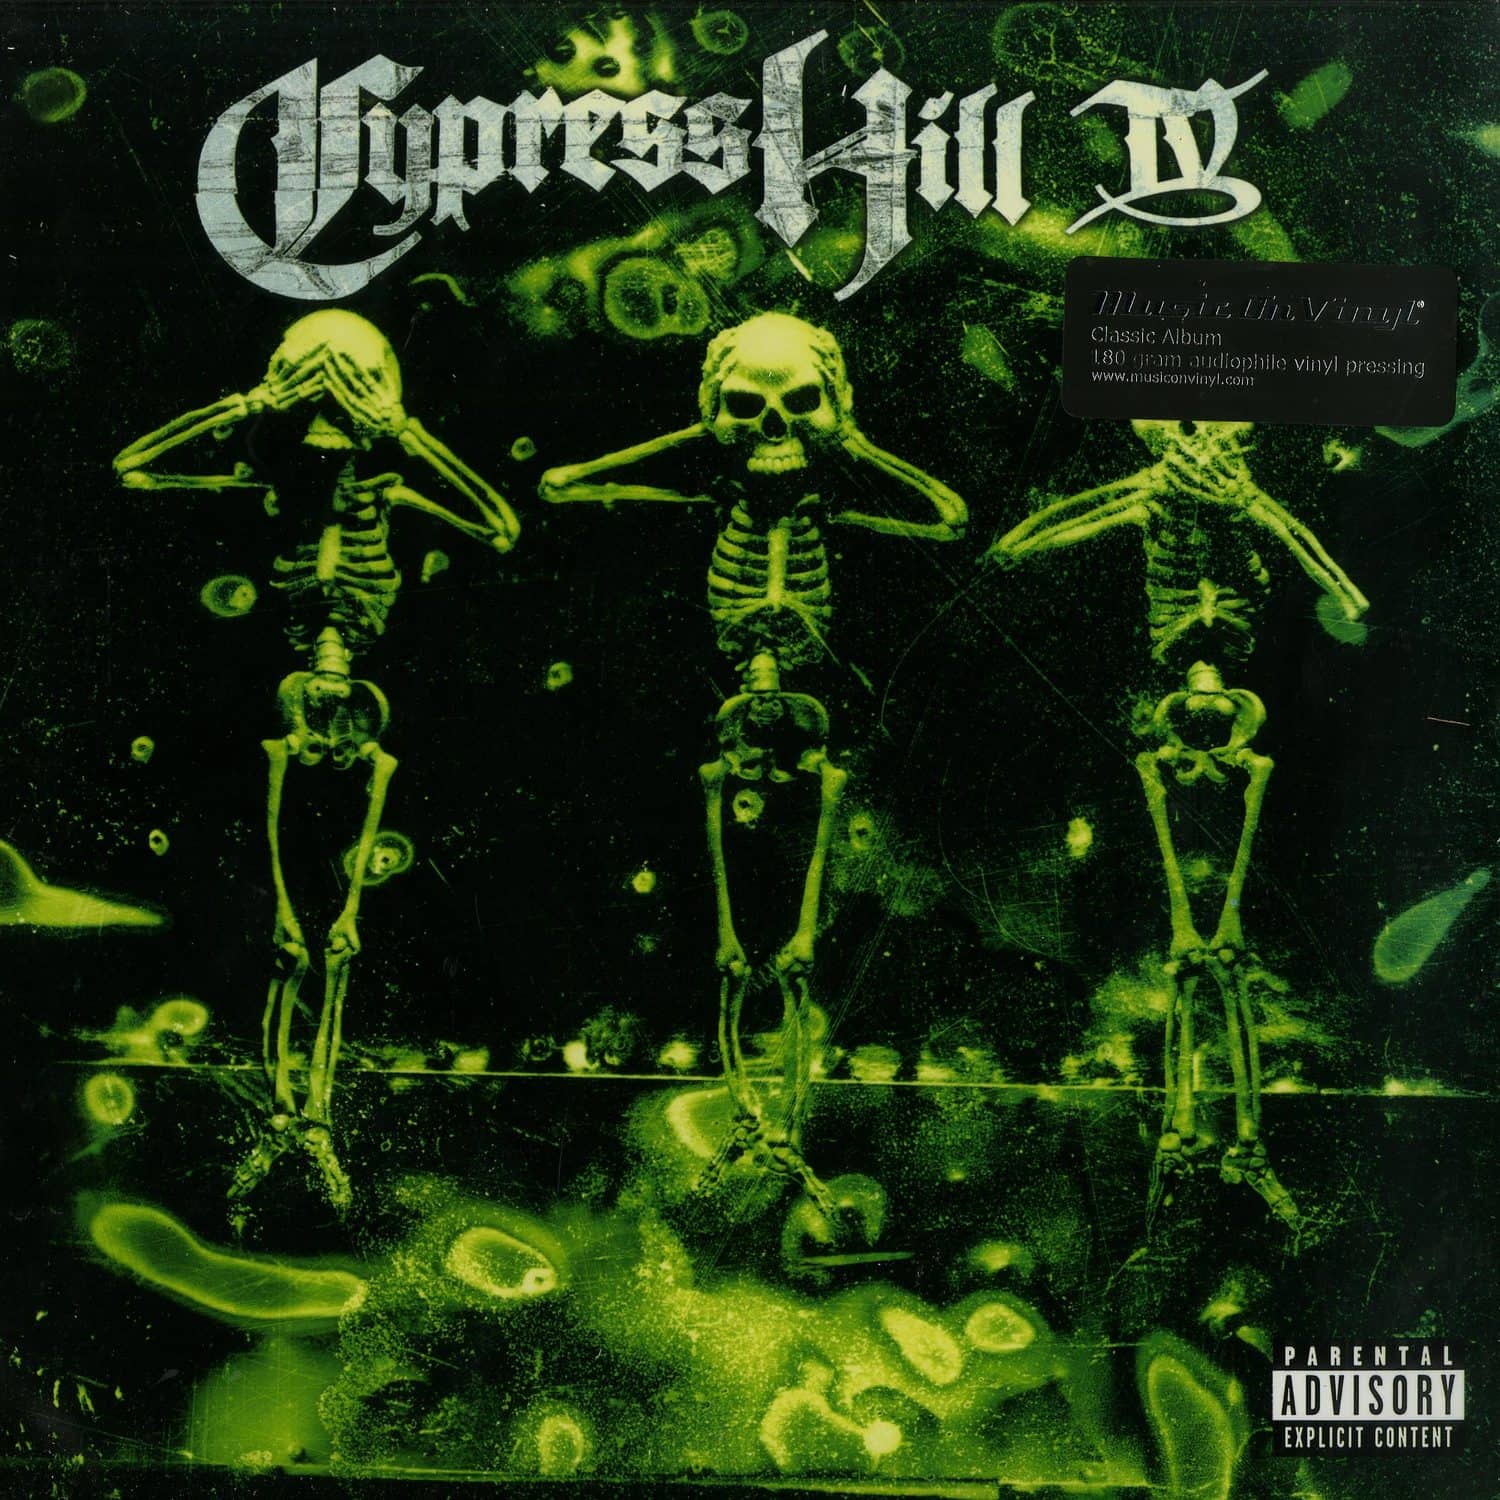 Cypress Hill - IV 